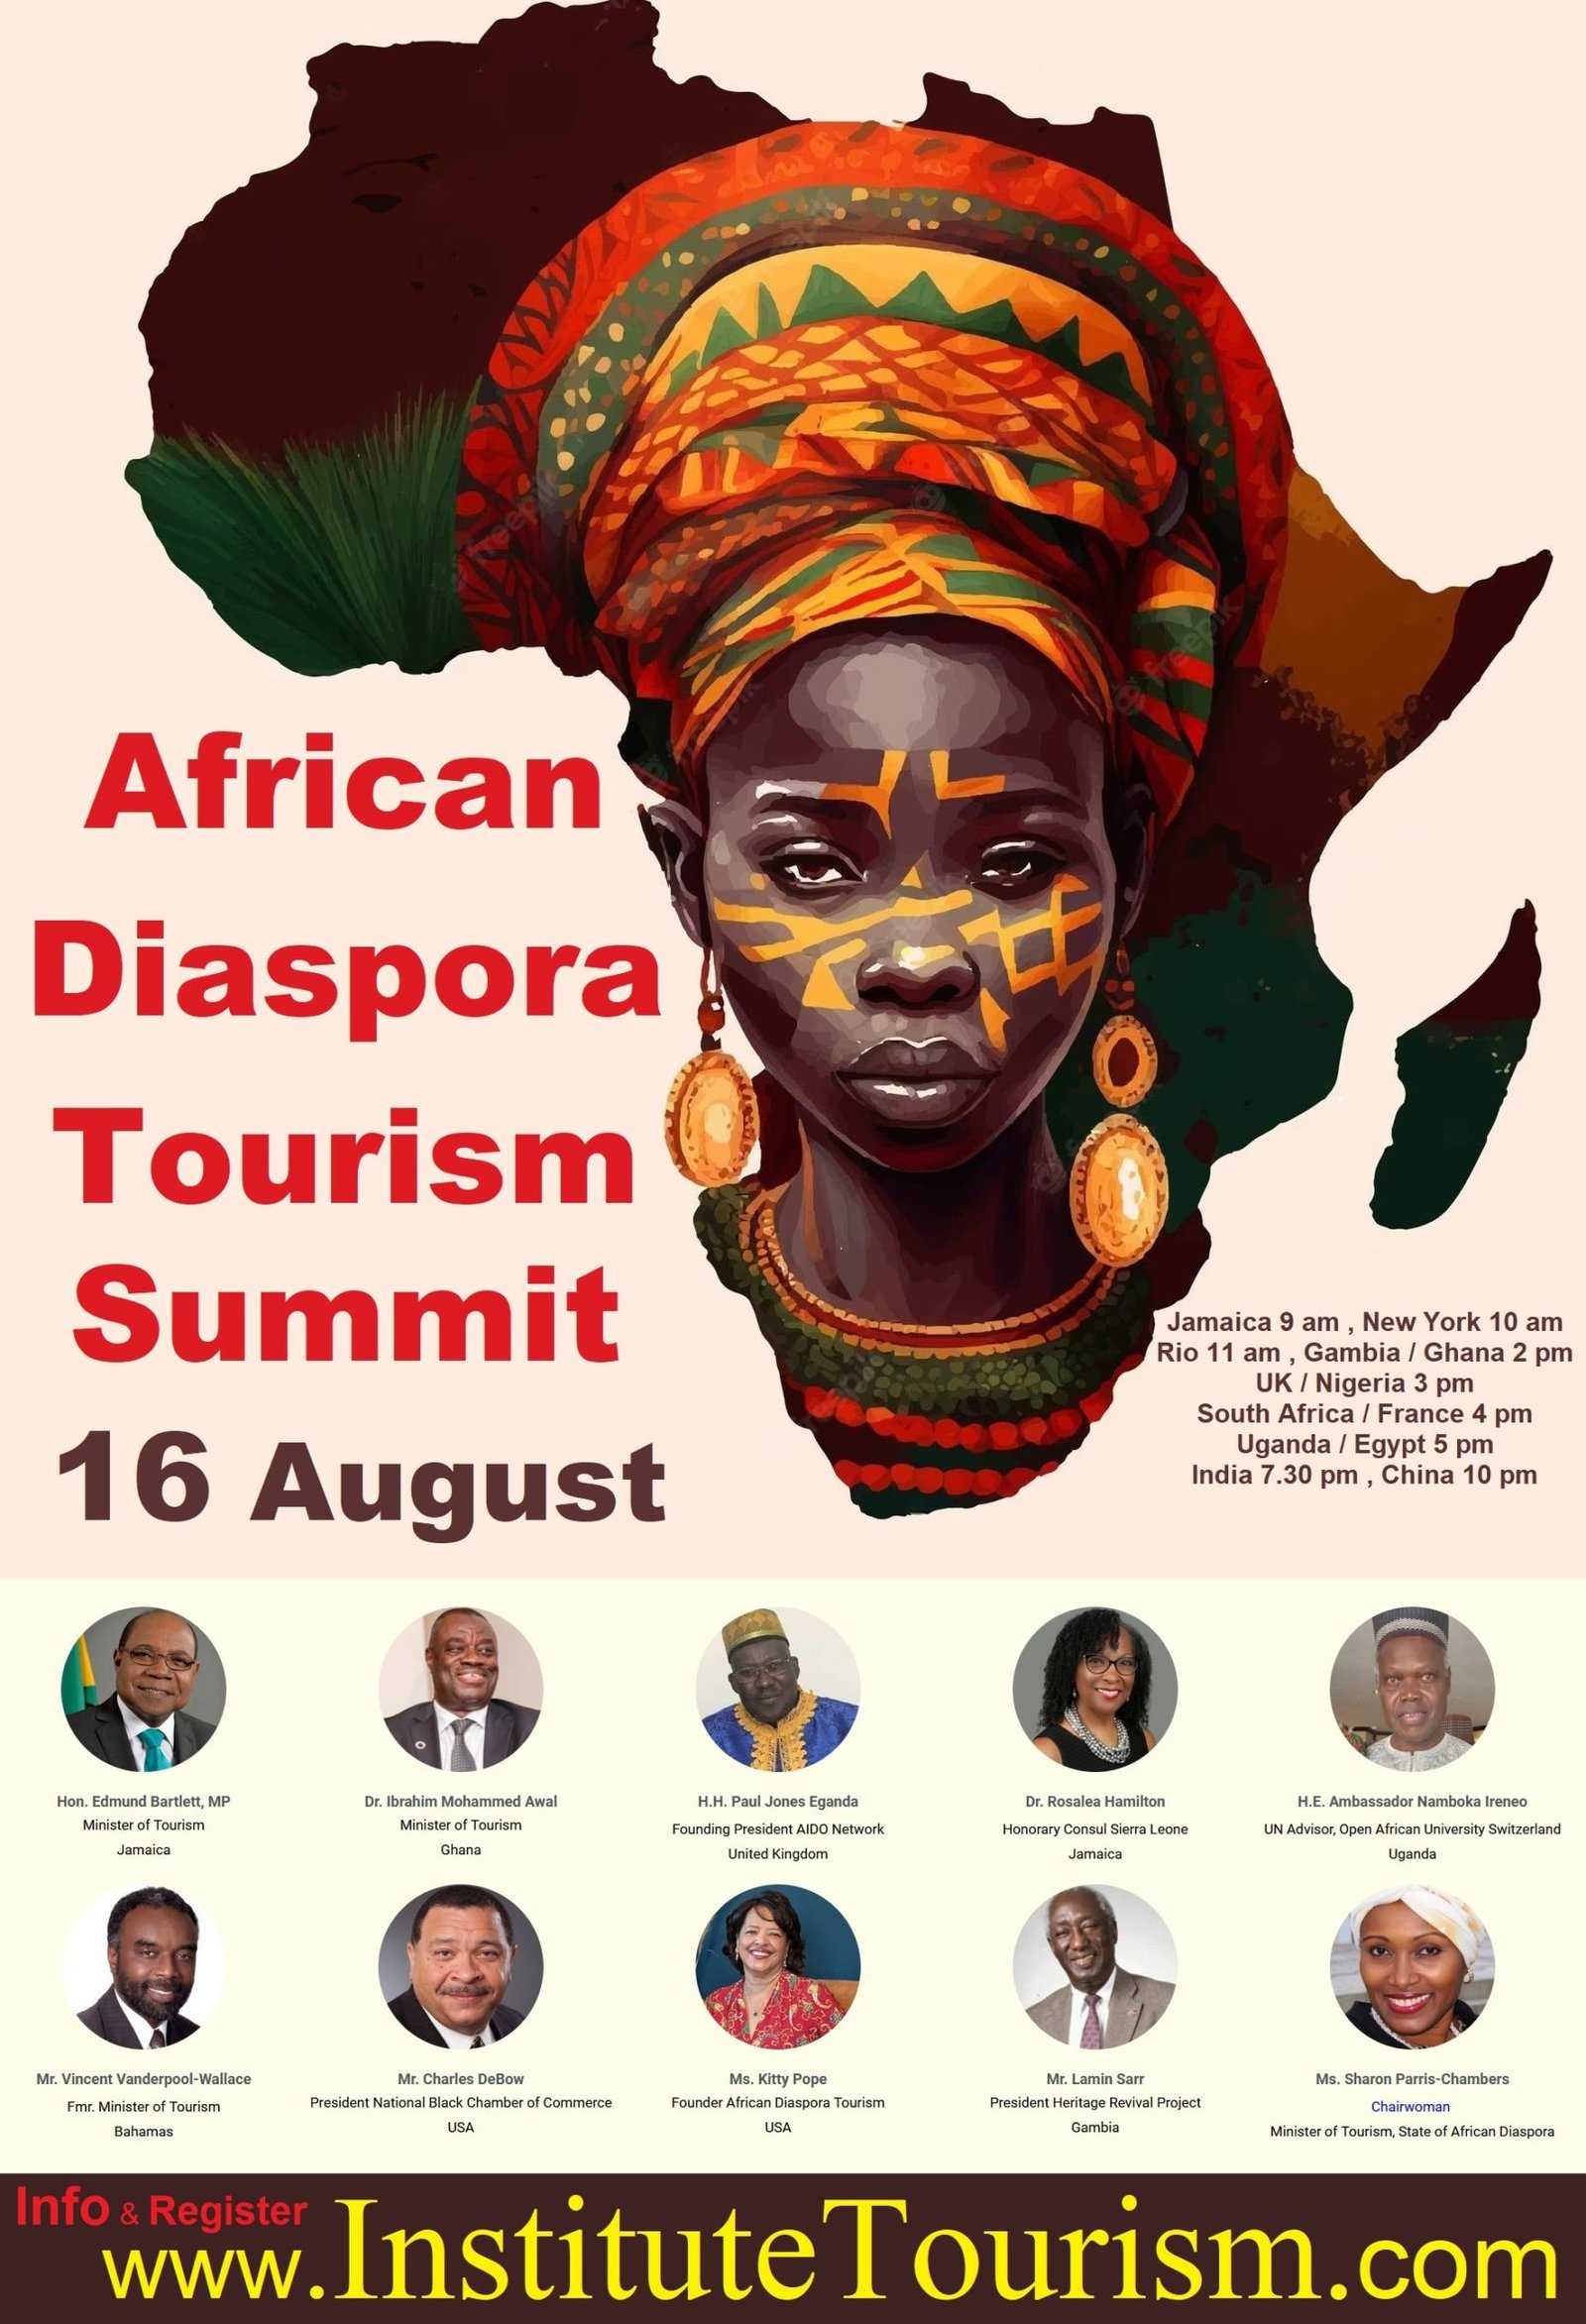 diaspora tourism definition